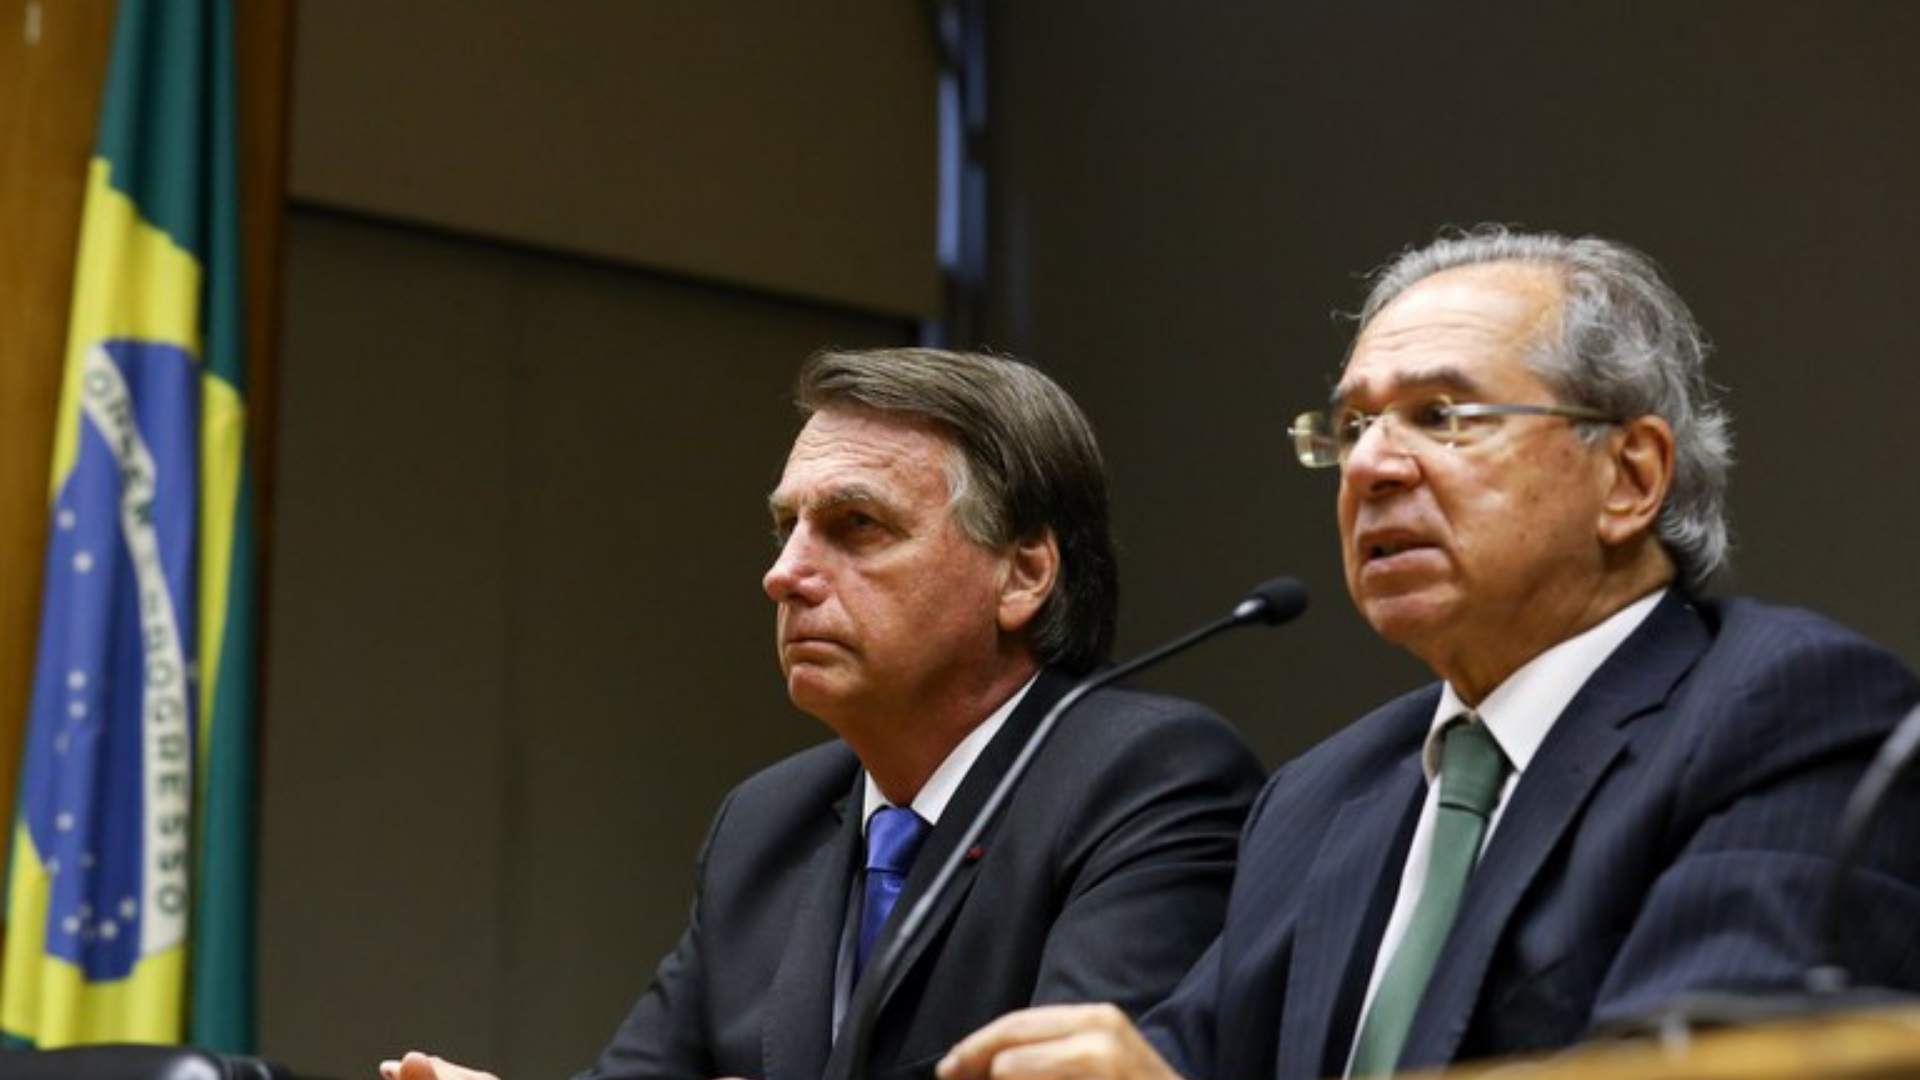 Foto de Bolsonaro ao lado de Paulo Guedes, ambos usam terno e estão sentados.